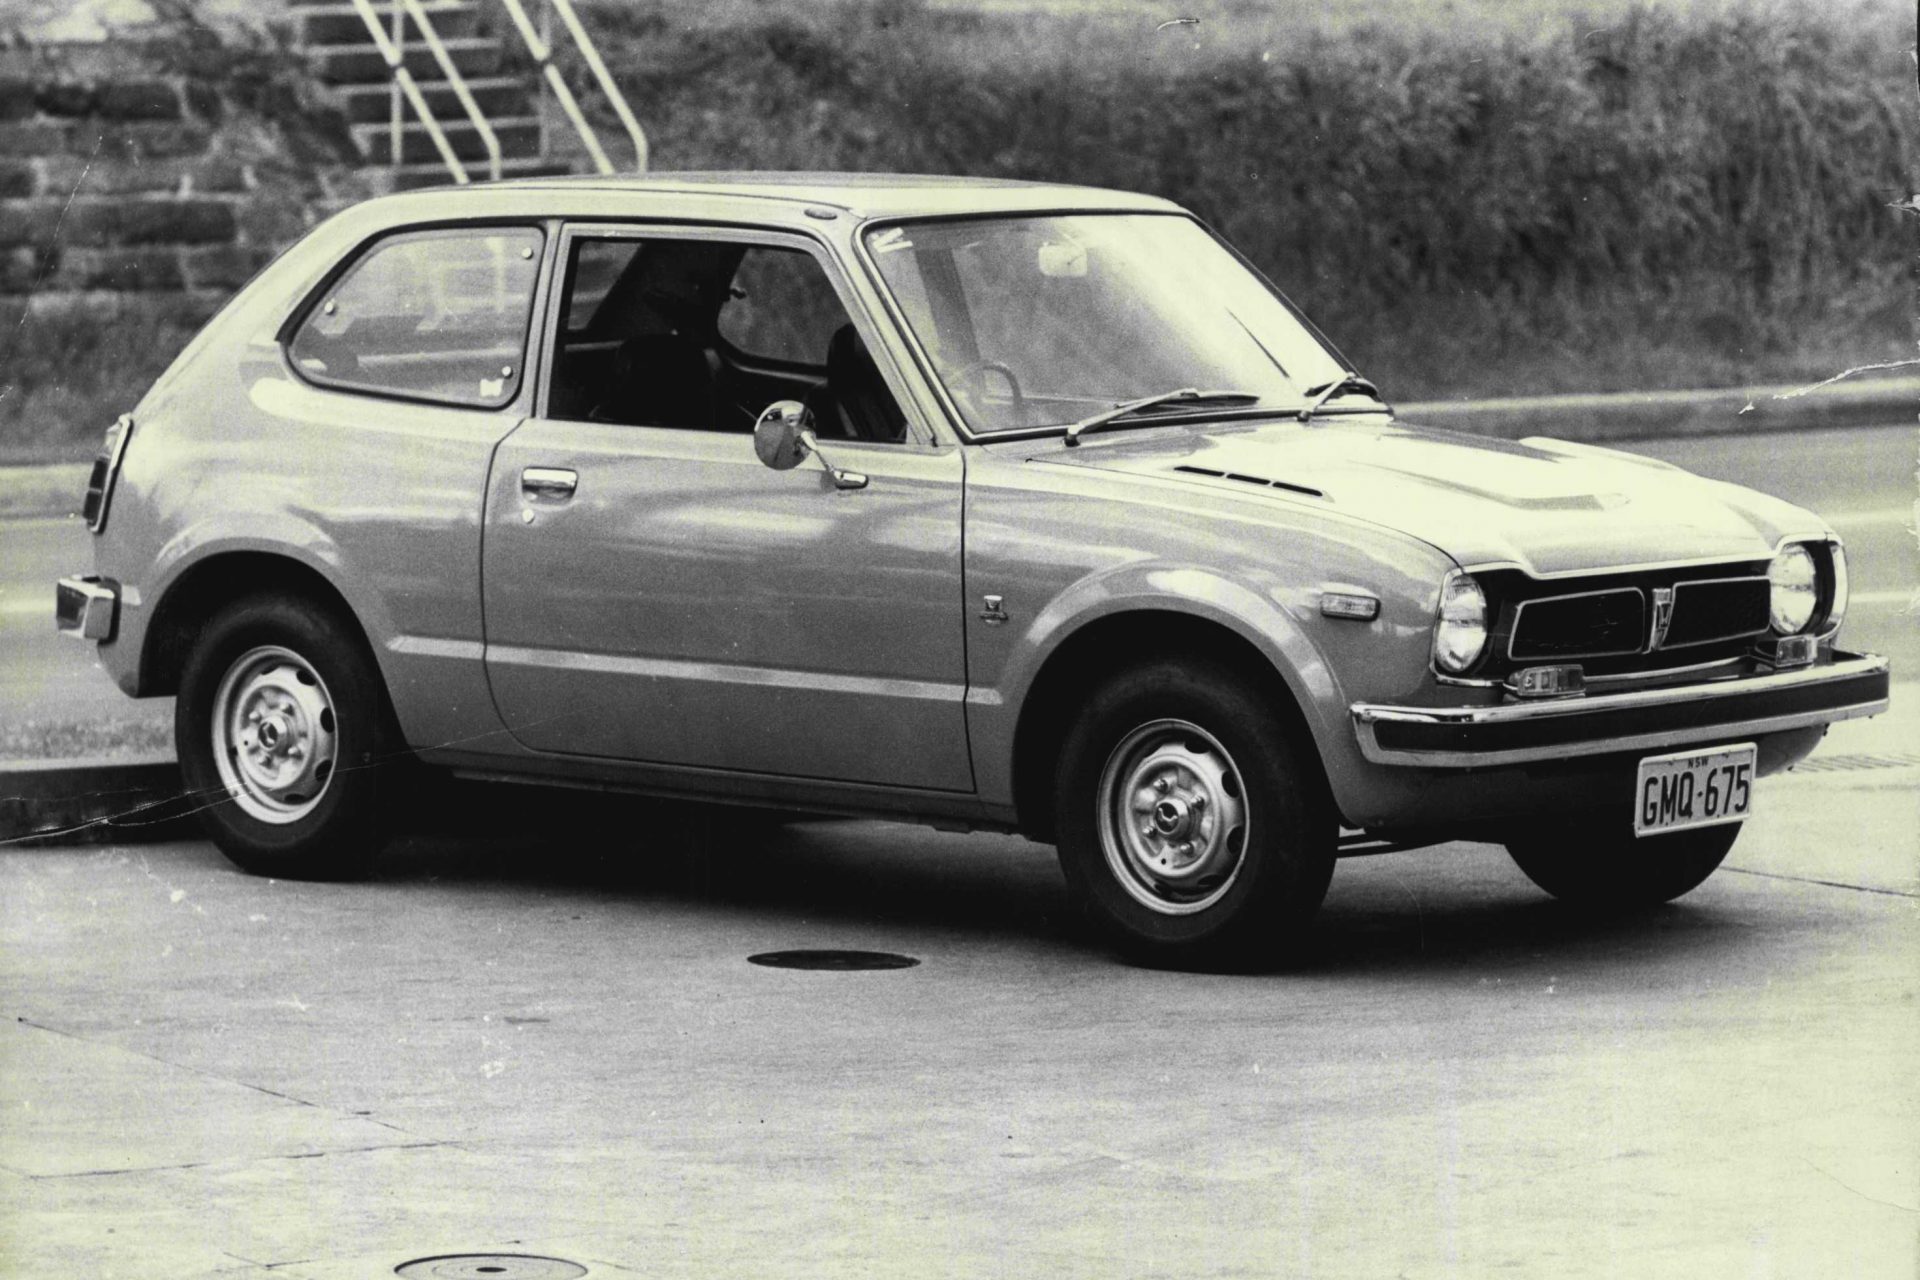 #6: Honda Civic (1972), 18.5 million cars